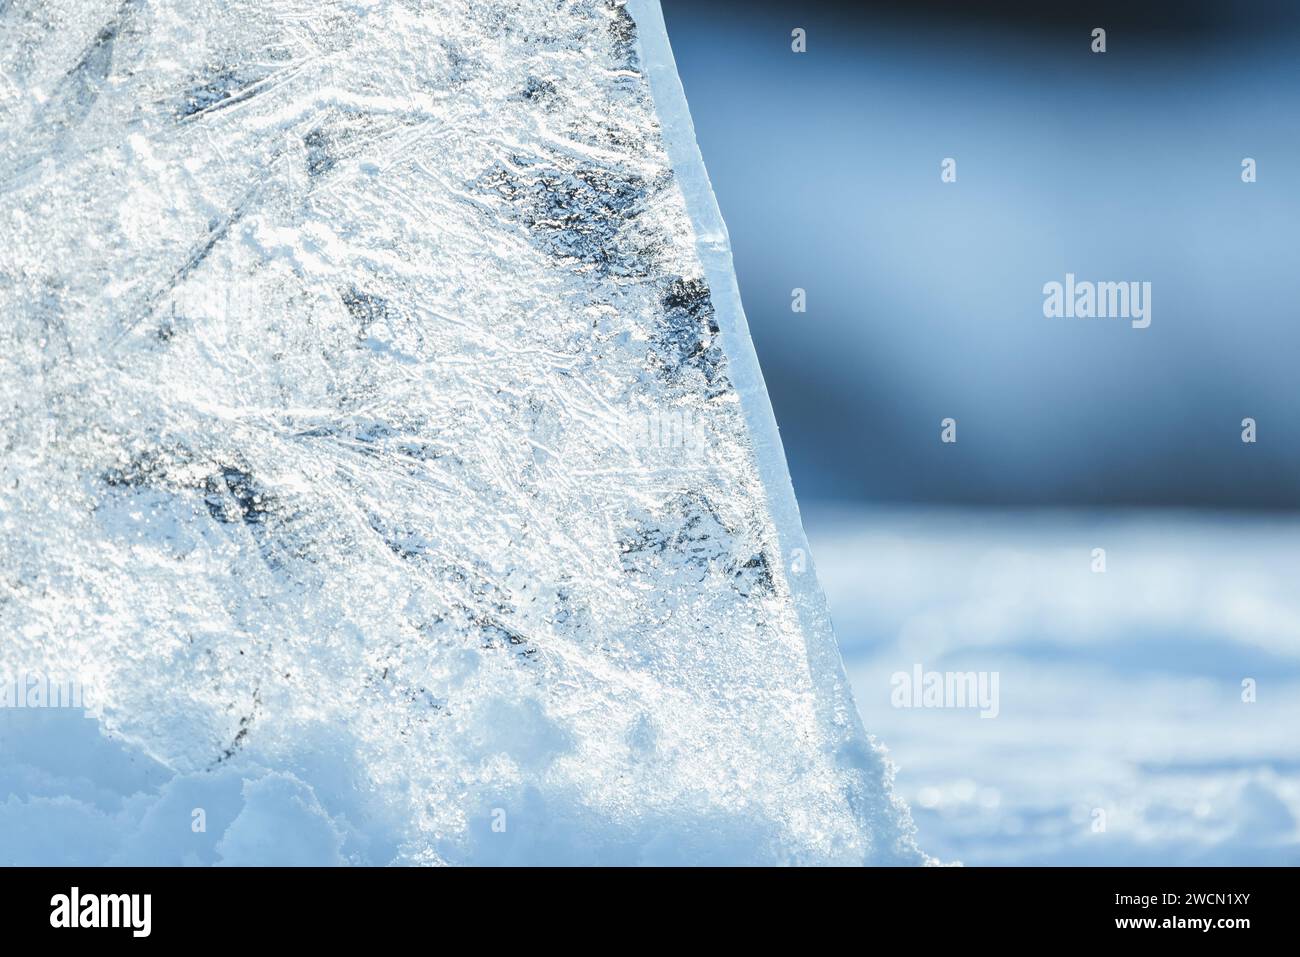 Un éclat de glace transparent se tient dans une dérive de neige lors d'une journée ensoleillée d'hiver, photo en gros plan avec flou sélectif Banque D'Images